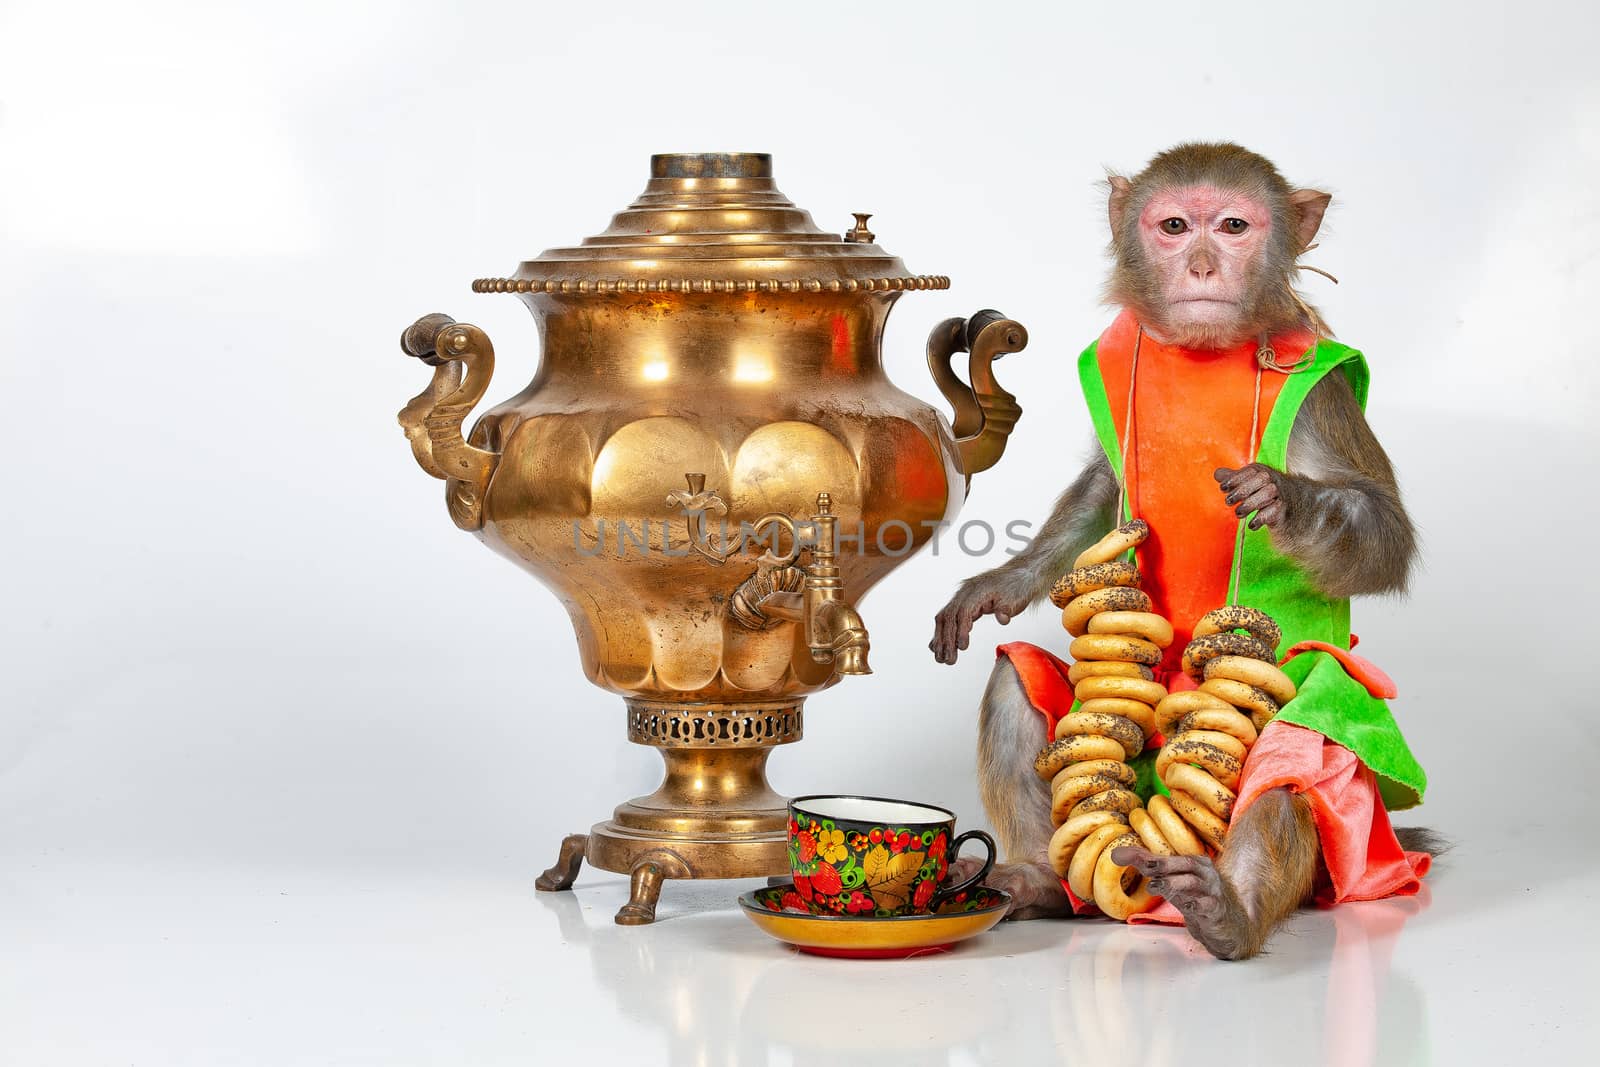 Monkey sitting near Russian water boiler